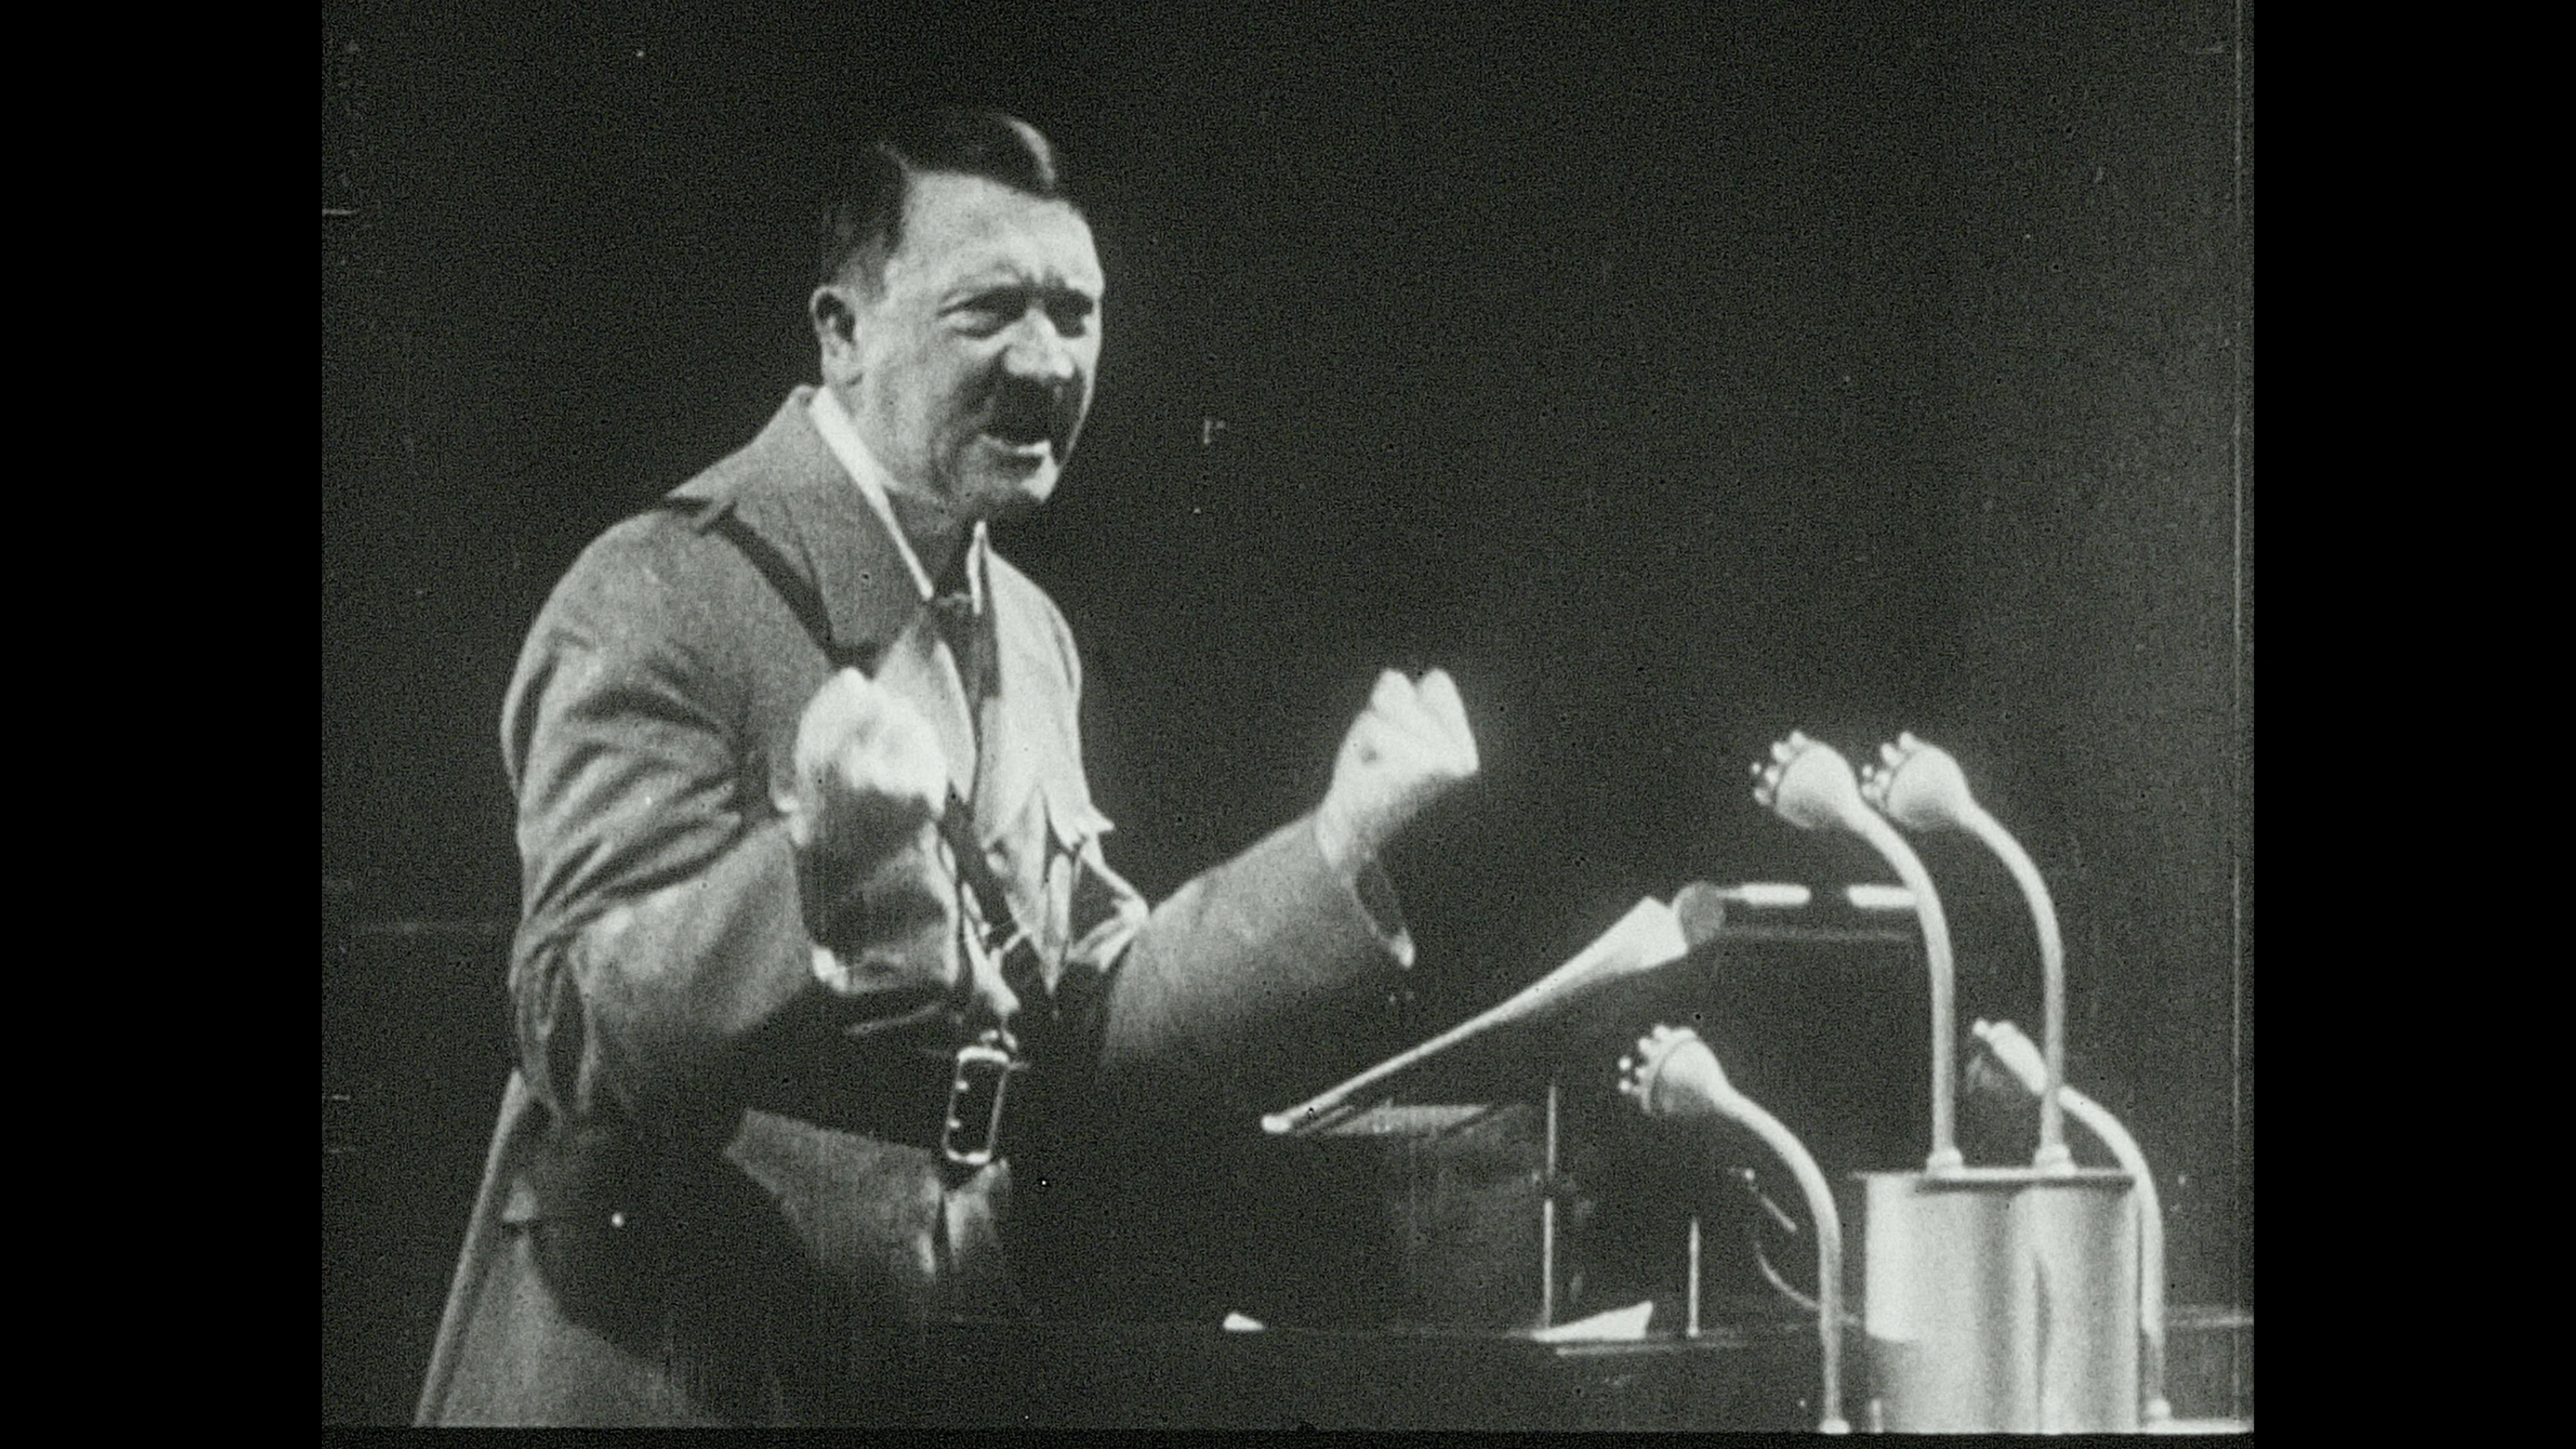 1940s-adolf-hitler-gives-speech-footage-084868994_prevstill.jpeg